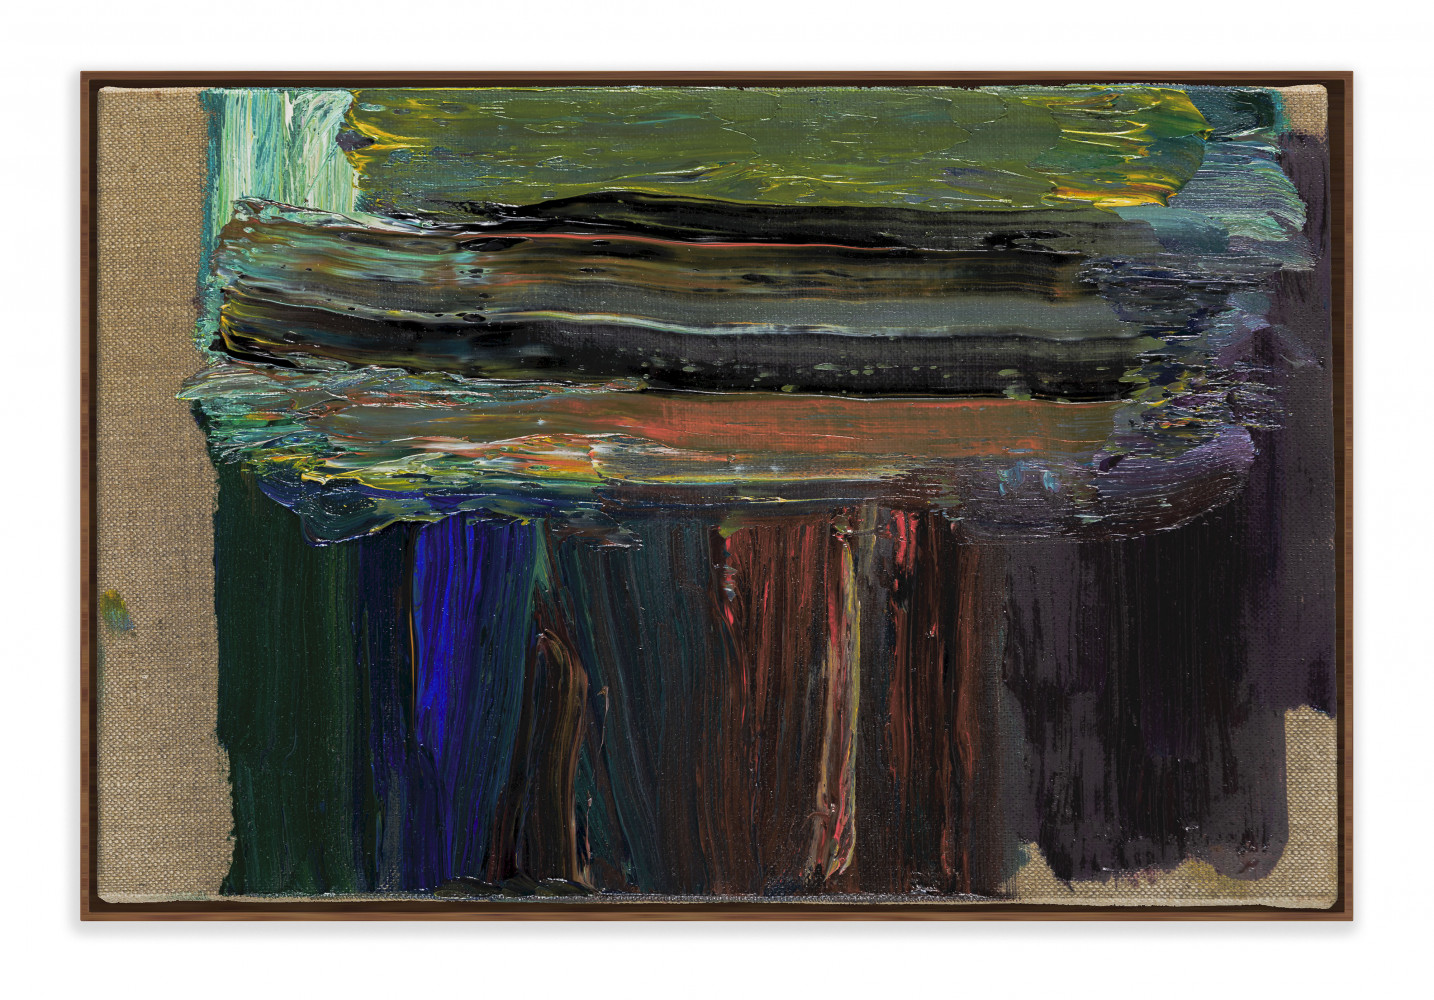 Pedro Cabrita Reis, ‘Landscapes (series VII) #7’, 2020, Öl auf roher Leinwand